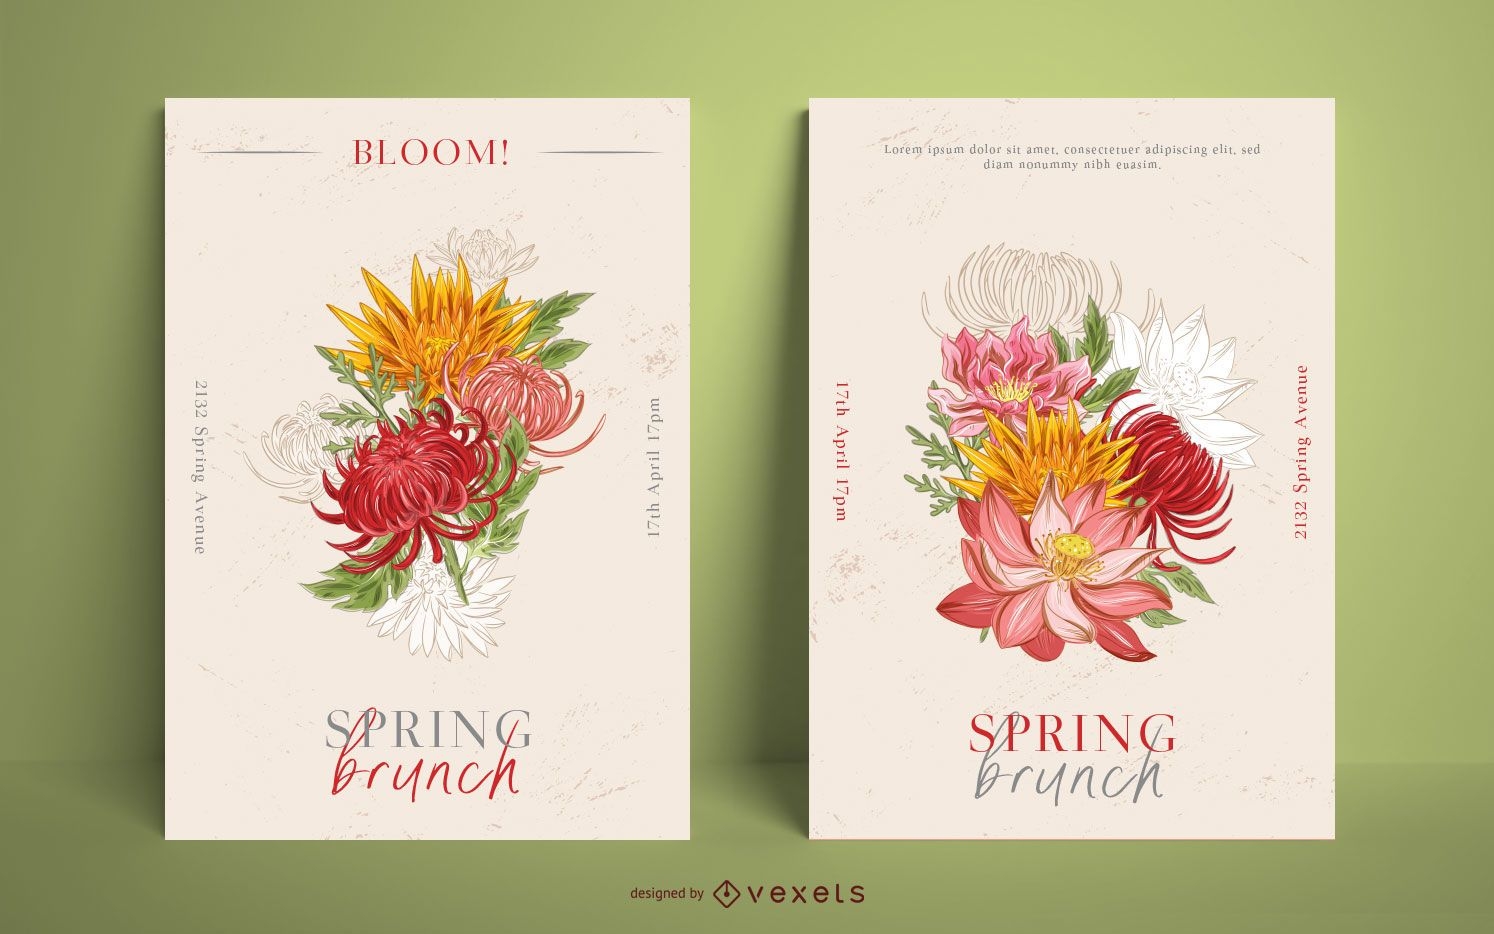 Spring brunch poster template set